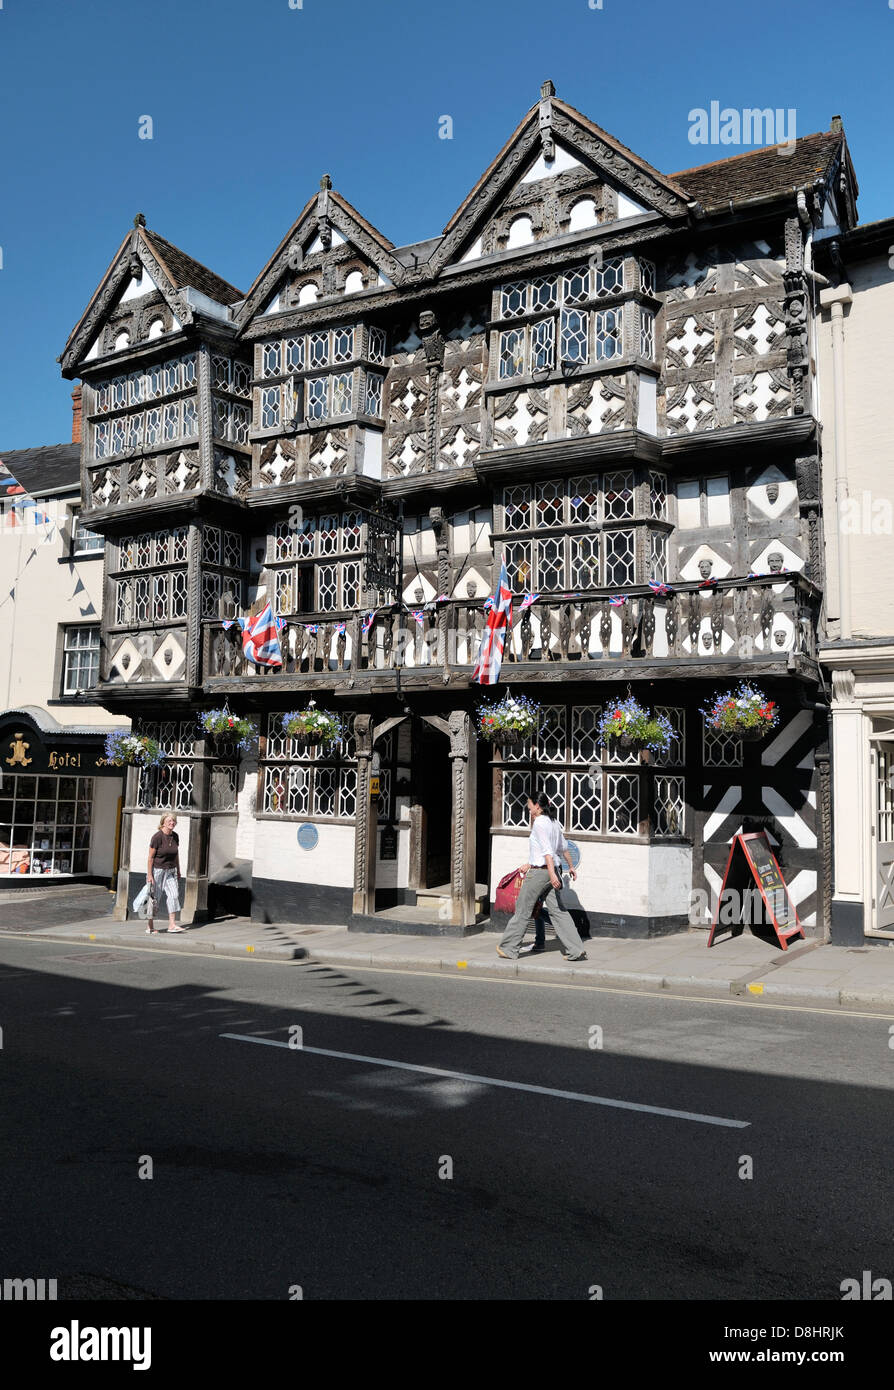 El famoso Hotel Feathers en Ludlow, Shropshire, construido como casa privada en 1619. Estilo Tudor edificio con entramados de madera Foto de stock